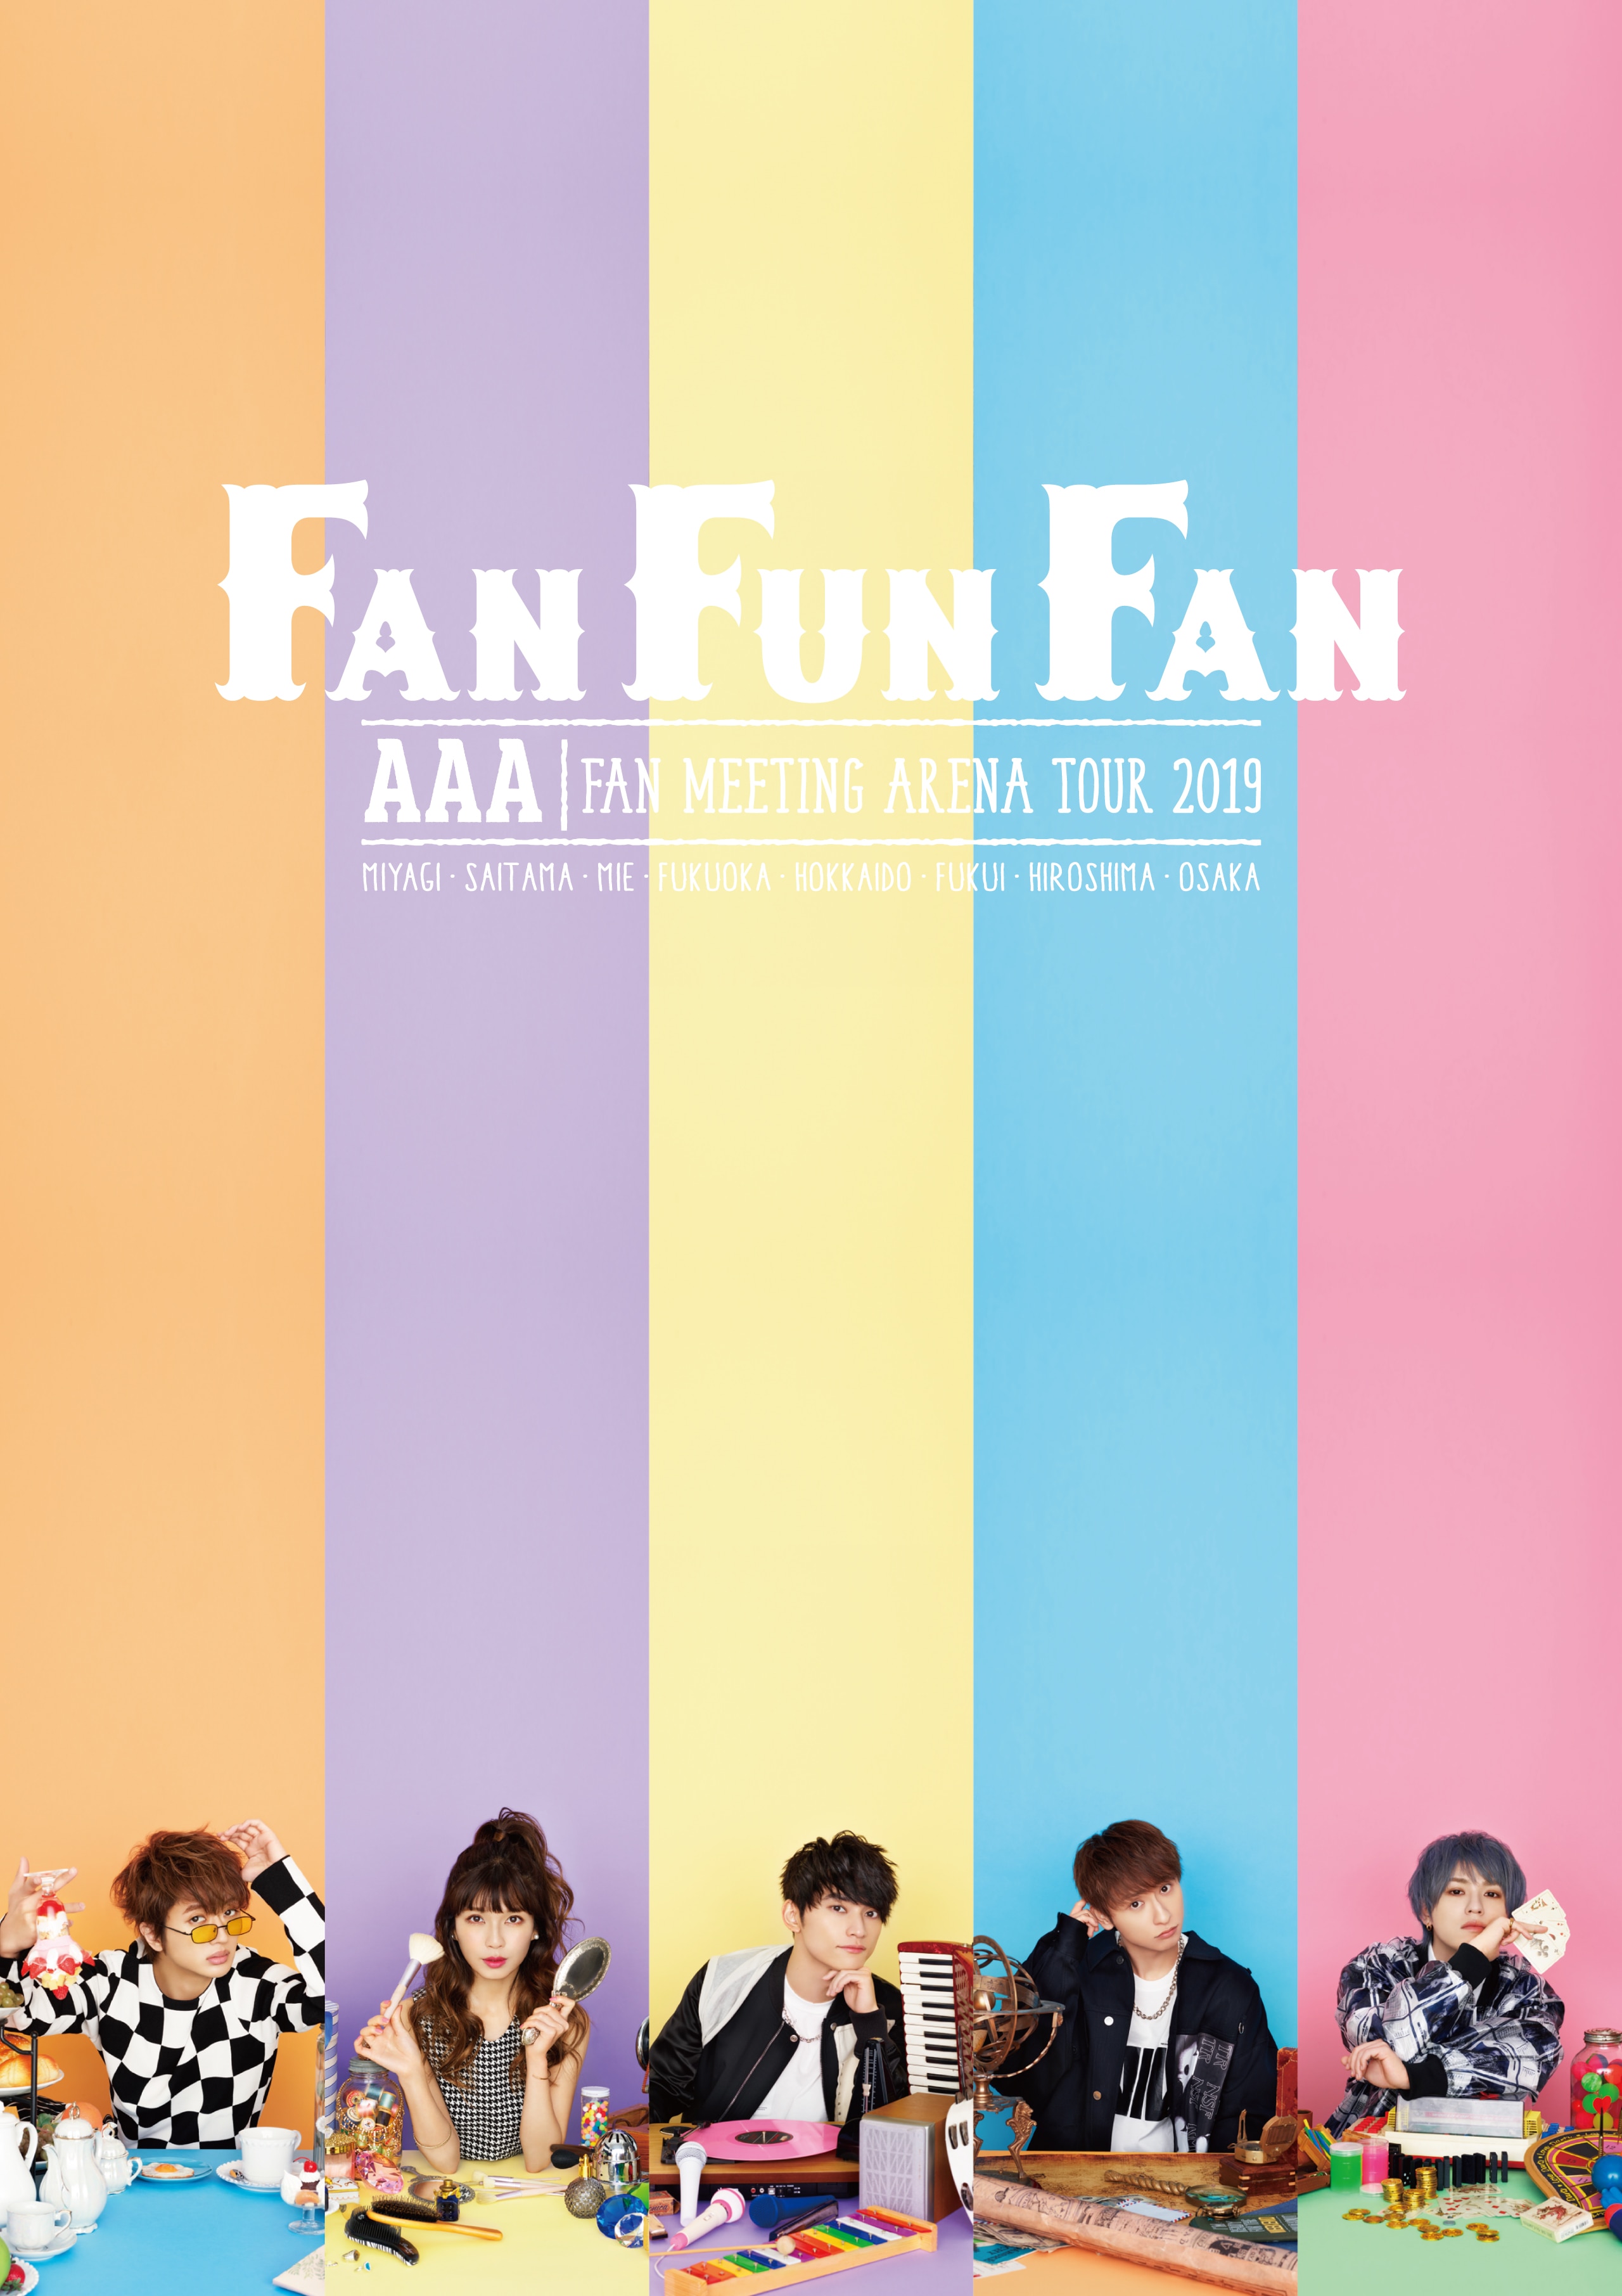 AAA FAN MEETING ARENA TOUR 2019 ～FAN FUN FAN～